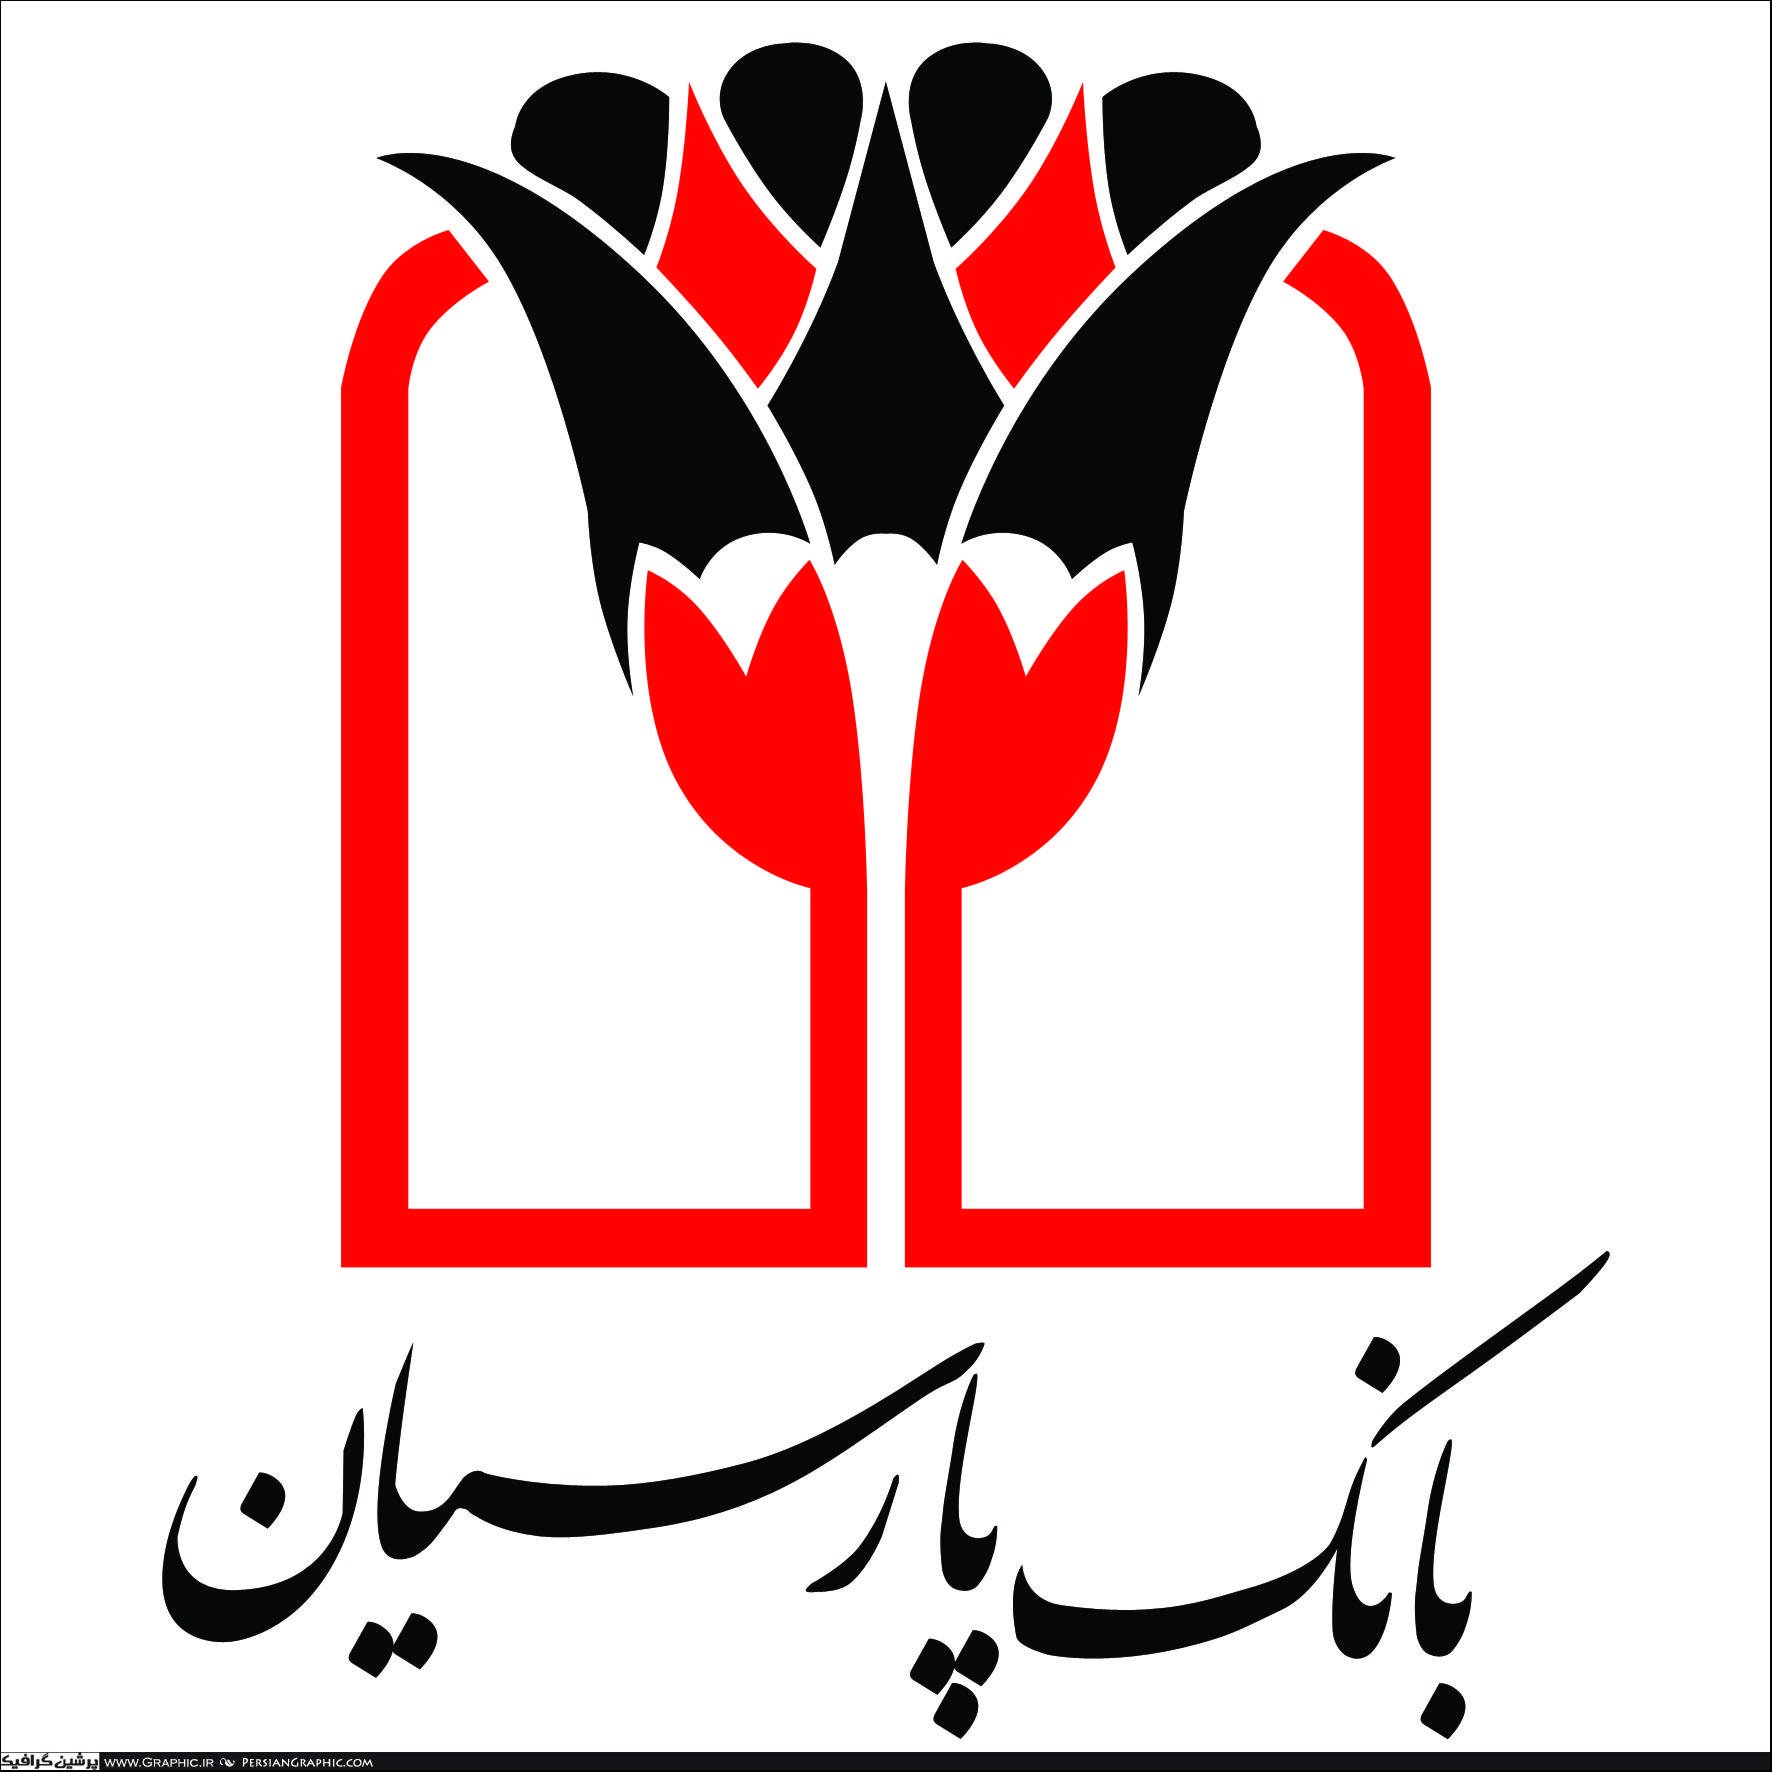 بانک پارسیان عضو سامانه ملی اندازه گیری شاخص های بهره وری ایران شد